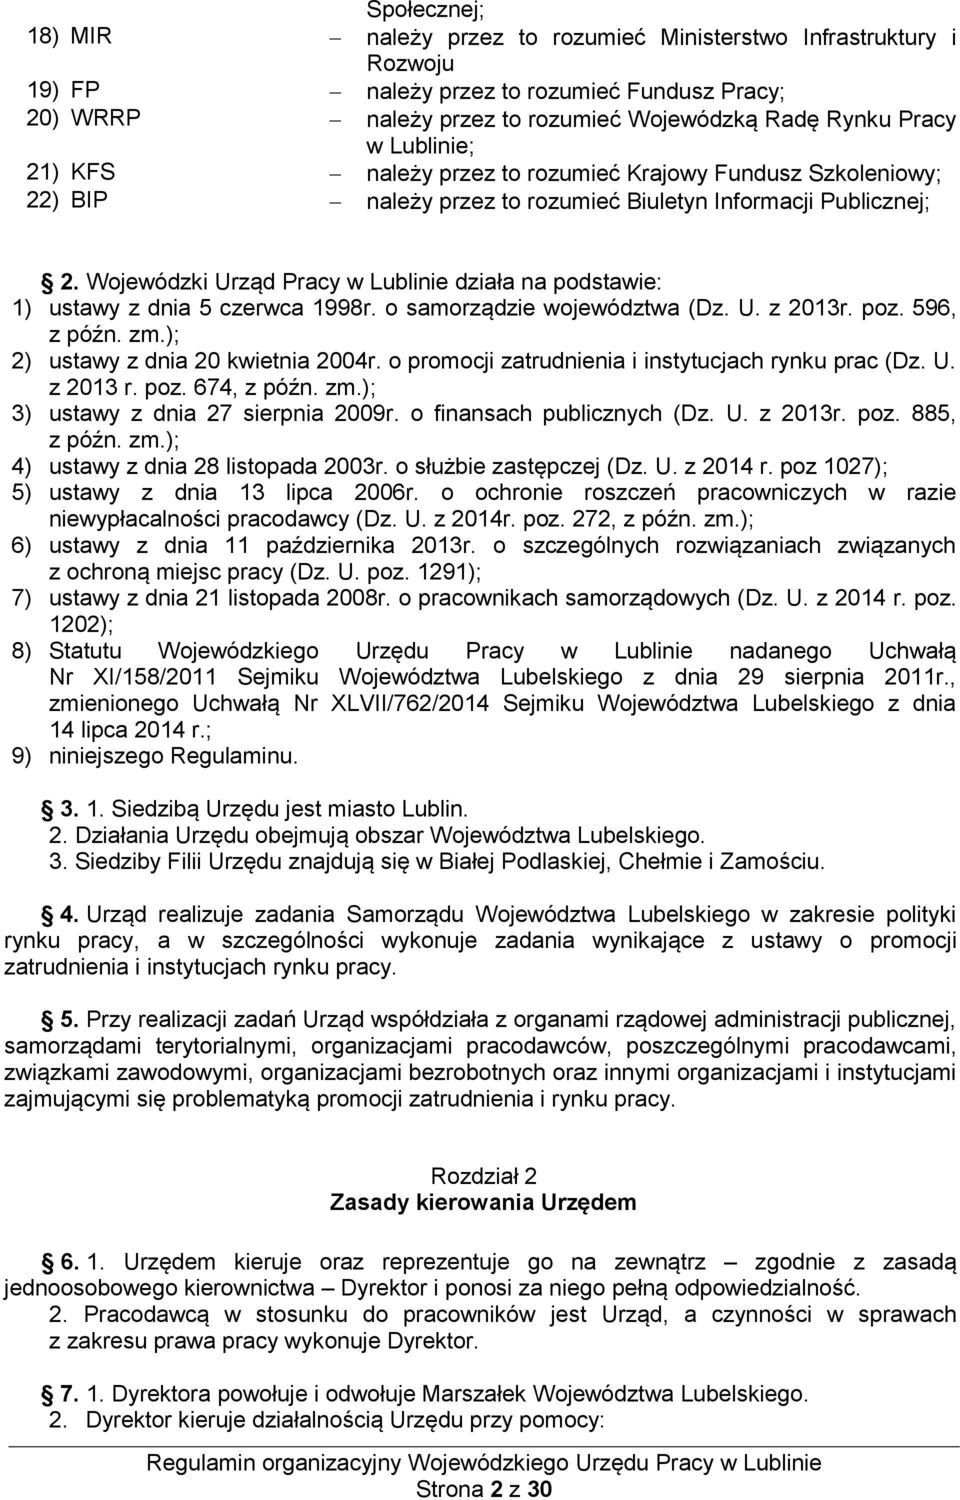 Wojewódzki Urząd Pracy w Lublinie działa na podstawie: 1) ustawy z dnia 5 czerwca 1998r. o samorządzie województwa (Dz. U. z 2013r. poz. 596, z późn. zm.); 2) ustawy z dnia 20 kwietnia 2004r.